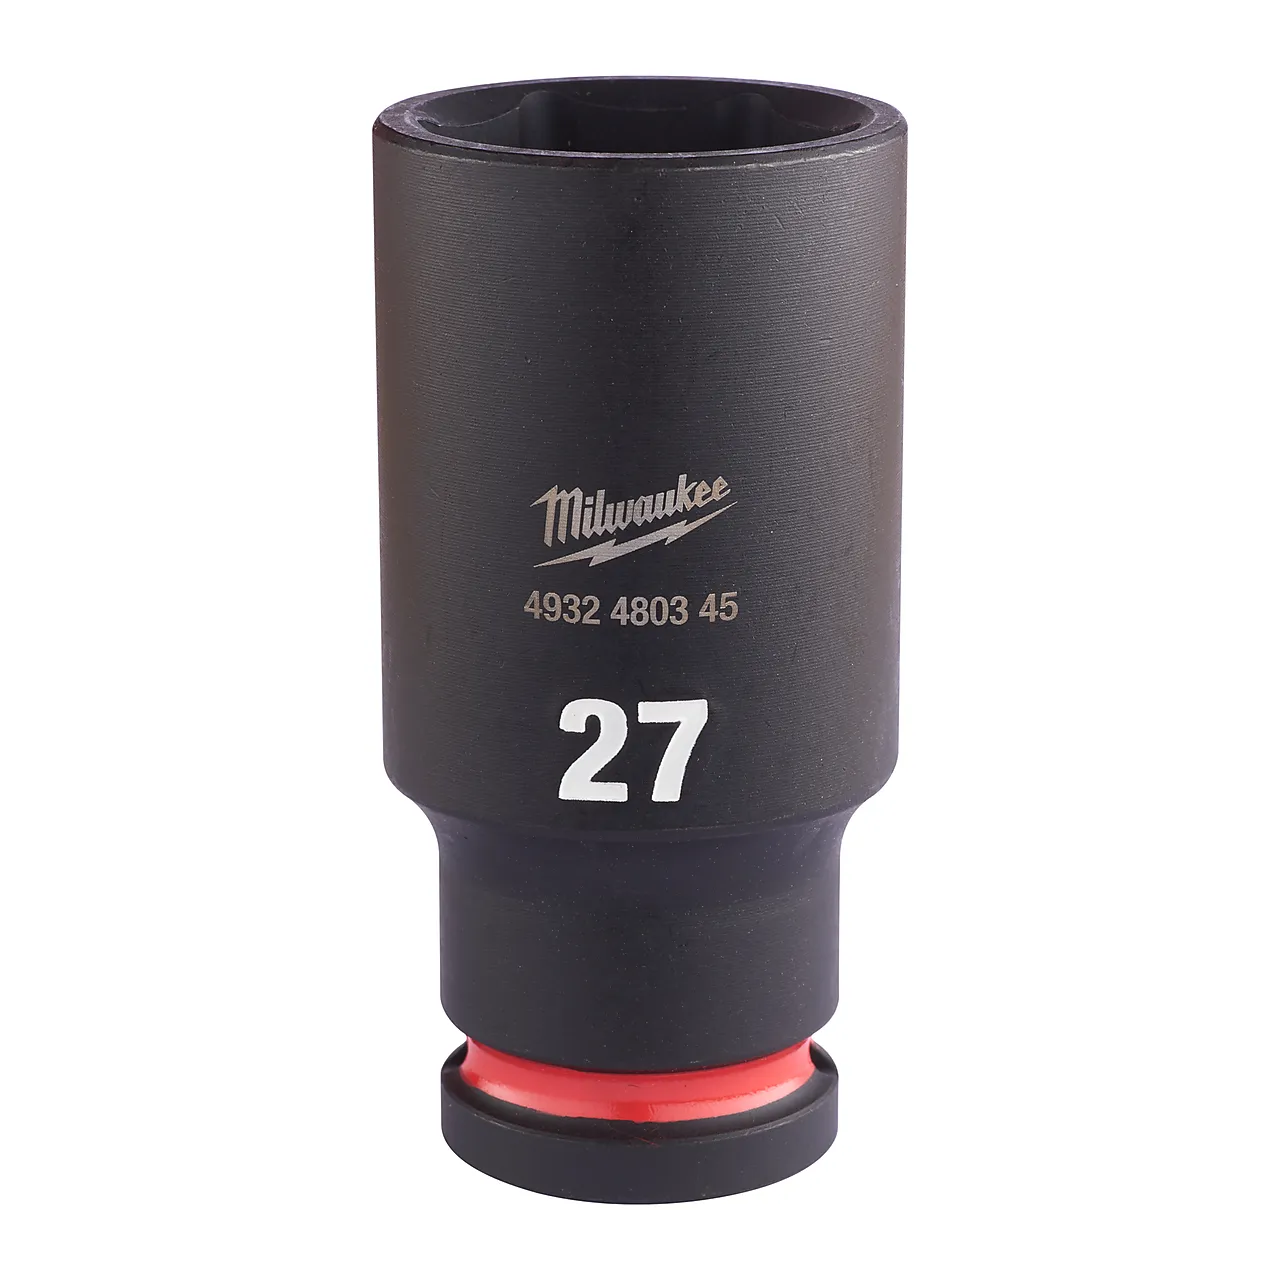 Kraftpipe 12 SHW dyp 27 mm